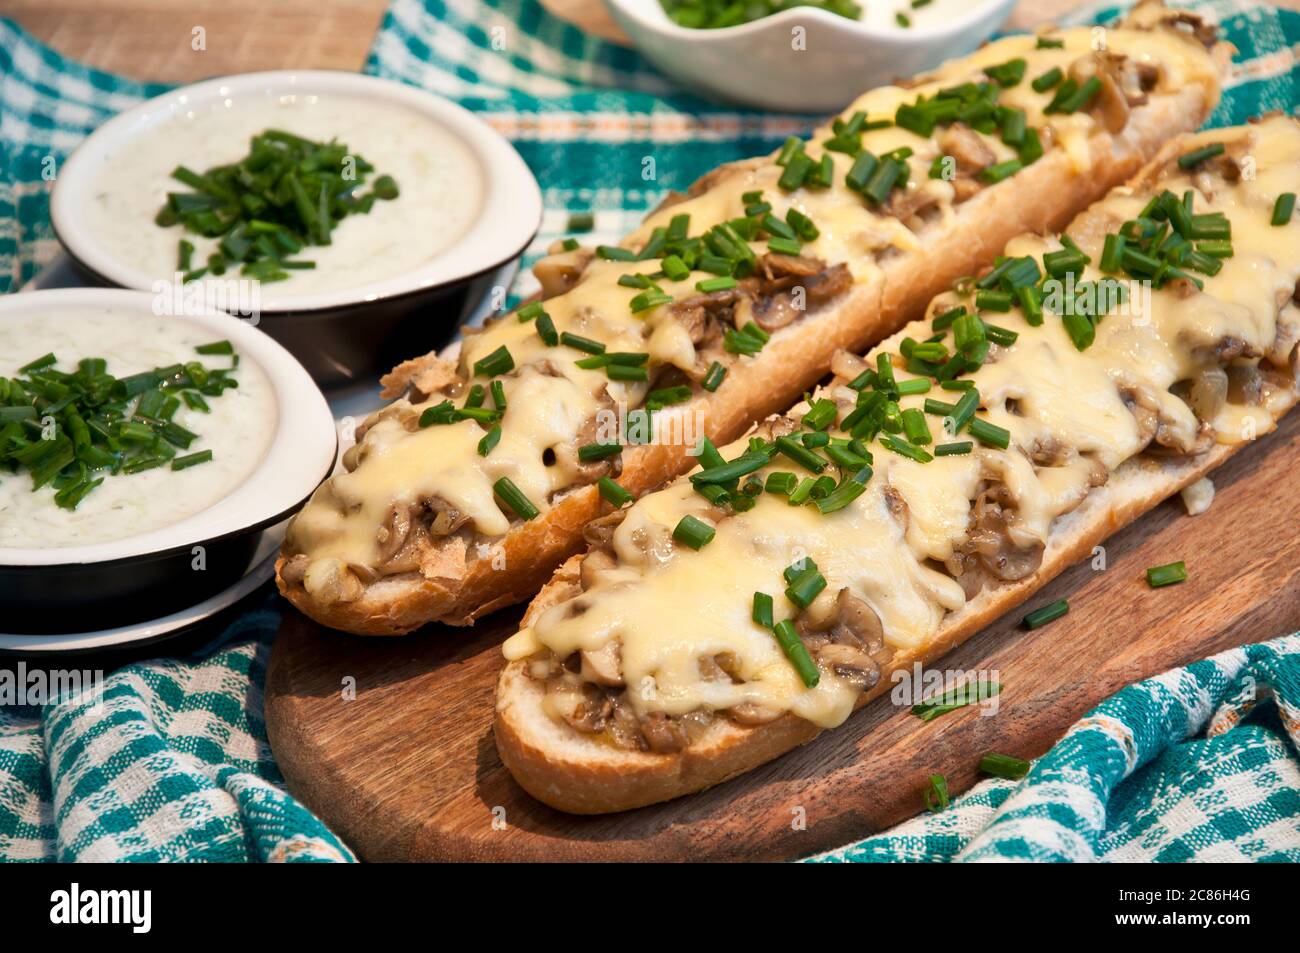 casseruola con formaggio e funghi cosparsa di erba cipollina fresca con salsa tzatziki Foto Stock